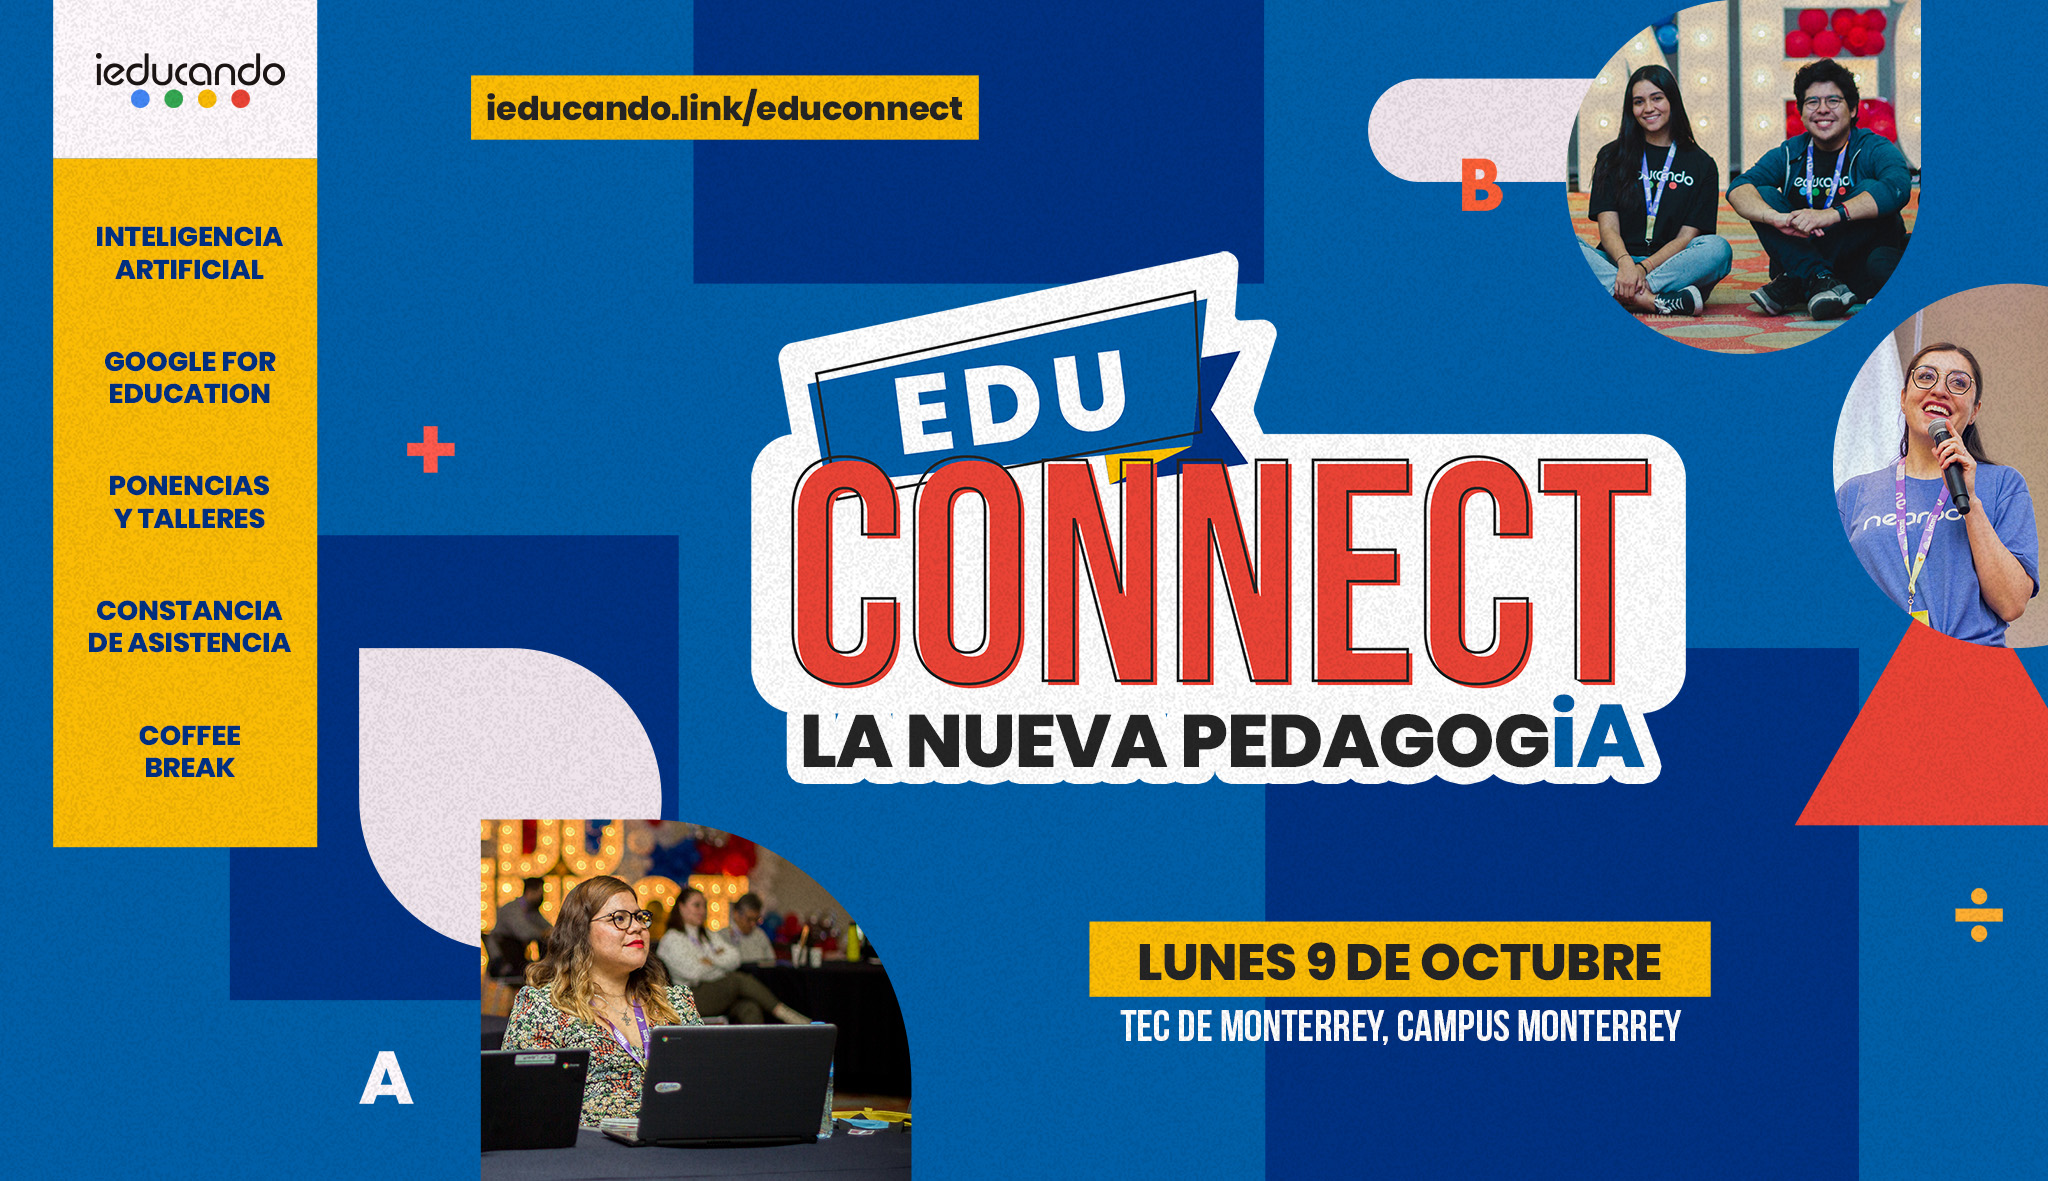 ieducando EduConnect Monterrey 2023 La nueva pedagogia en el Tec de Monterrey